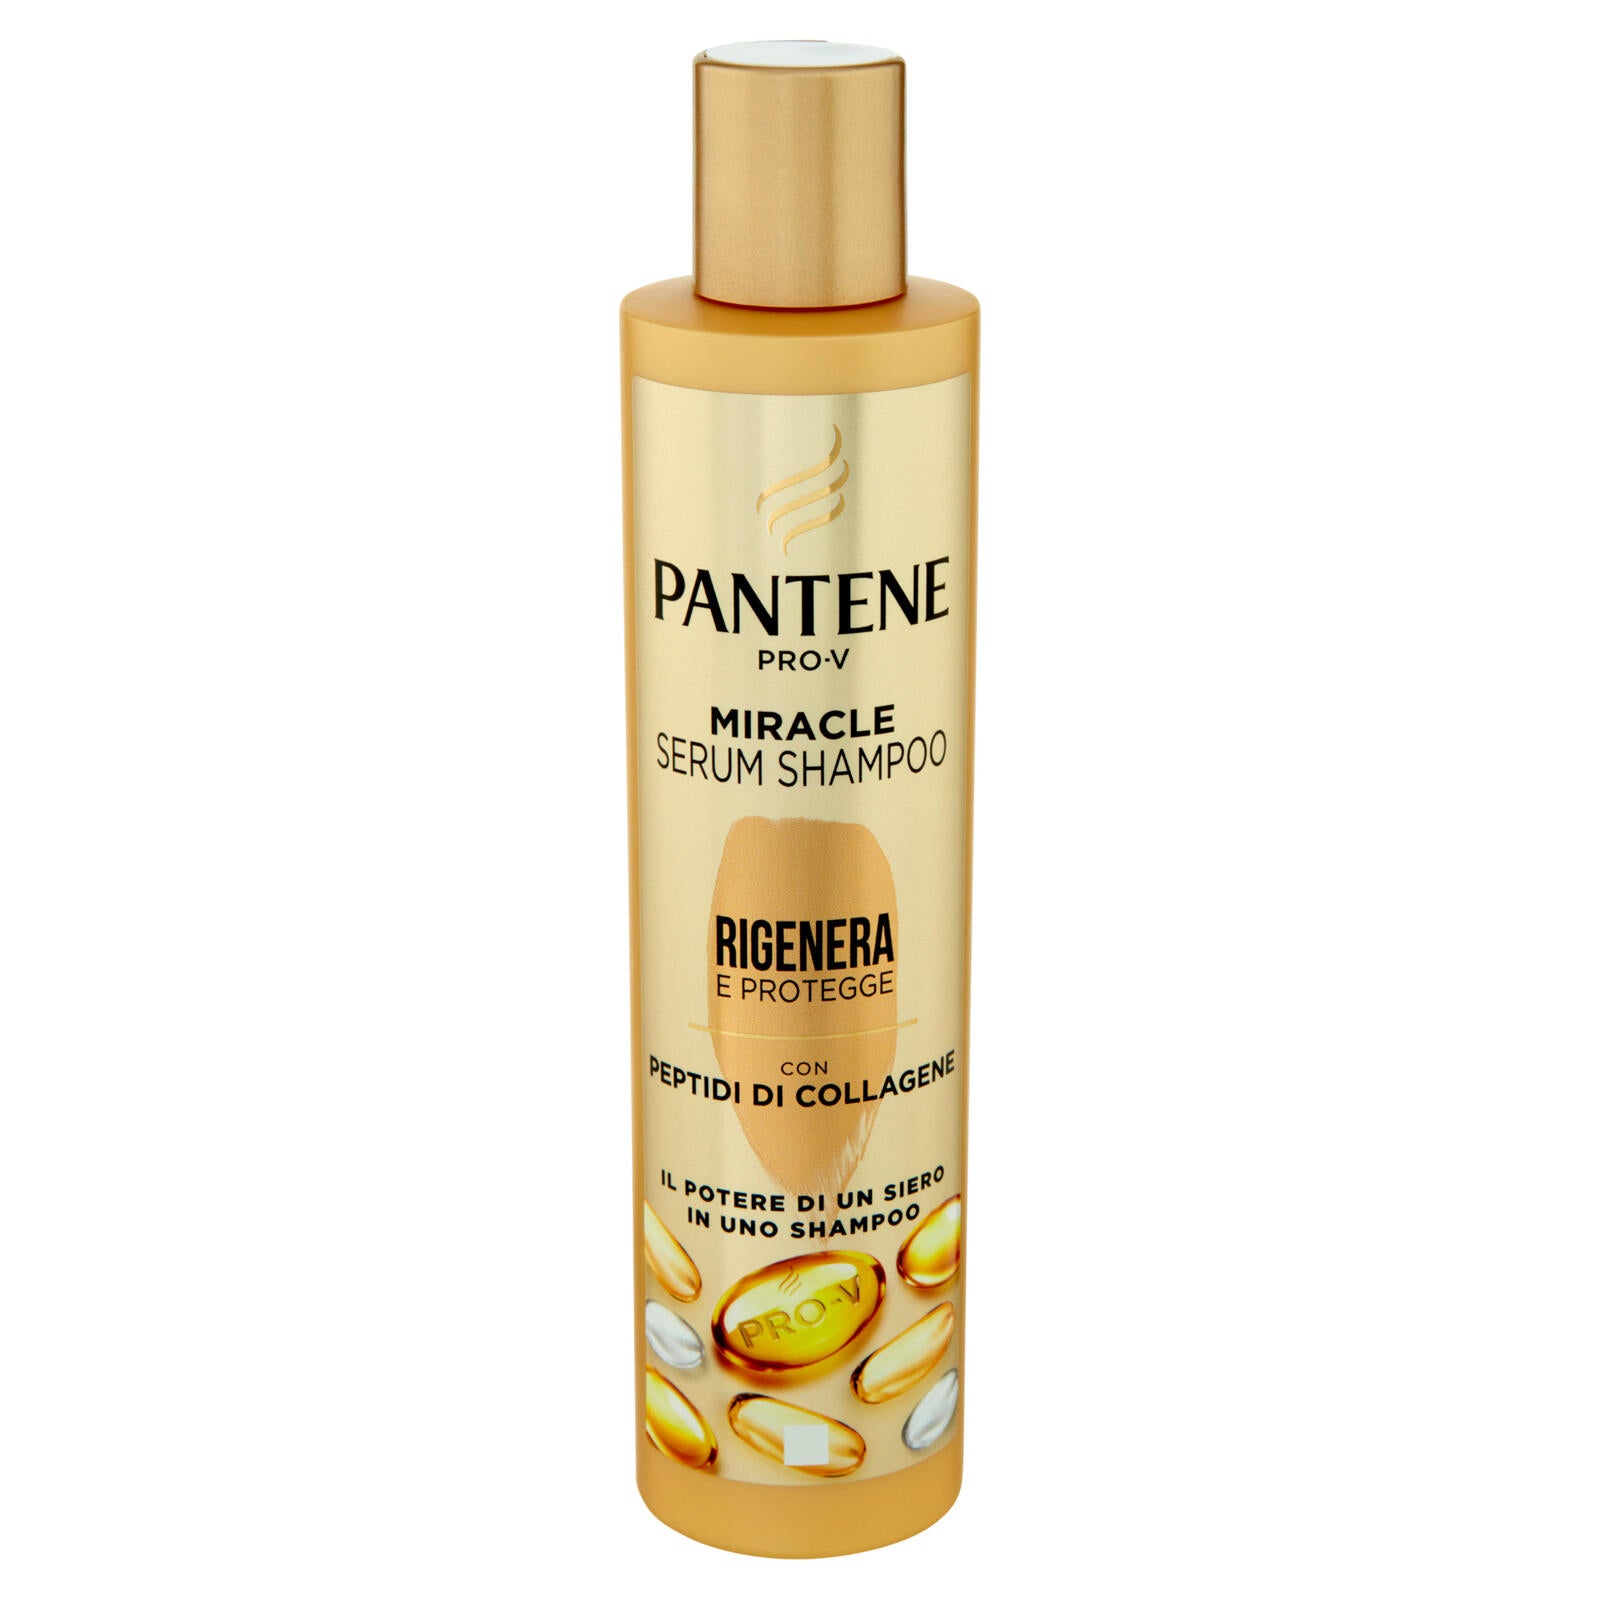 Pantene Pro-V Miracle Serum Shampoo Rigenera e Protegge 250 ml